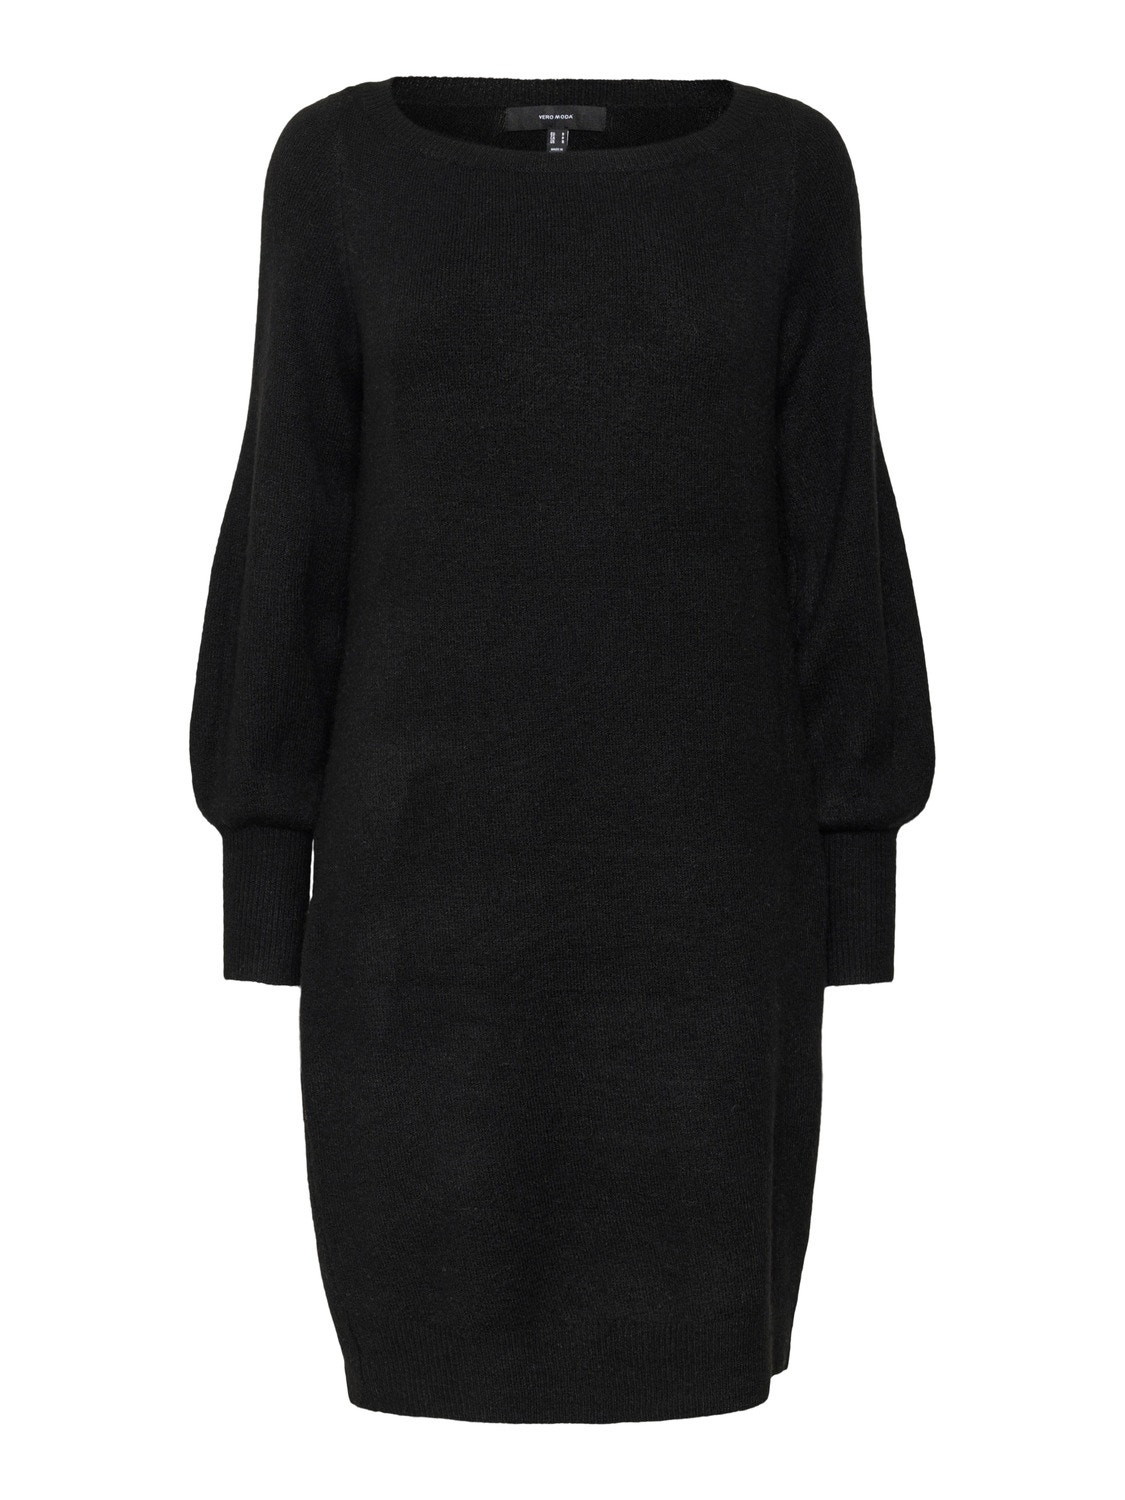 Vero Moda VMCSIMONE Short dress -Black - 10304099